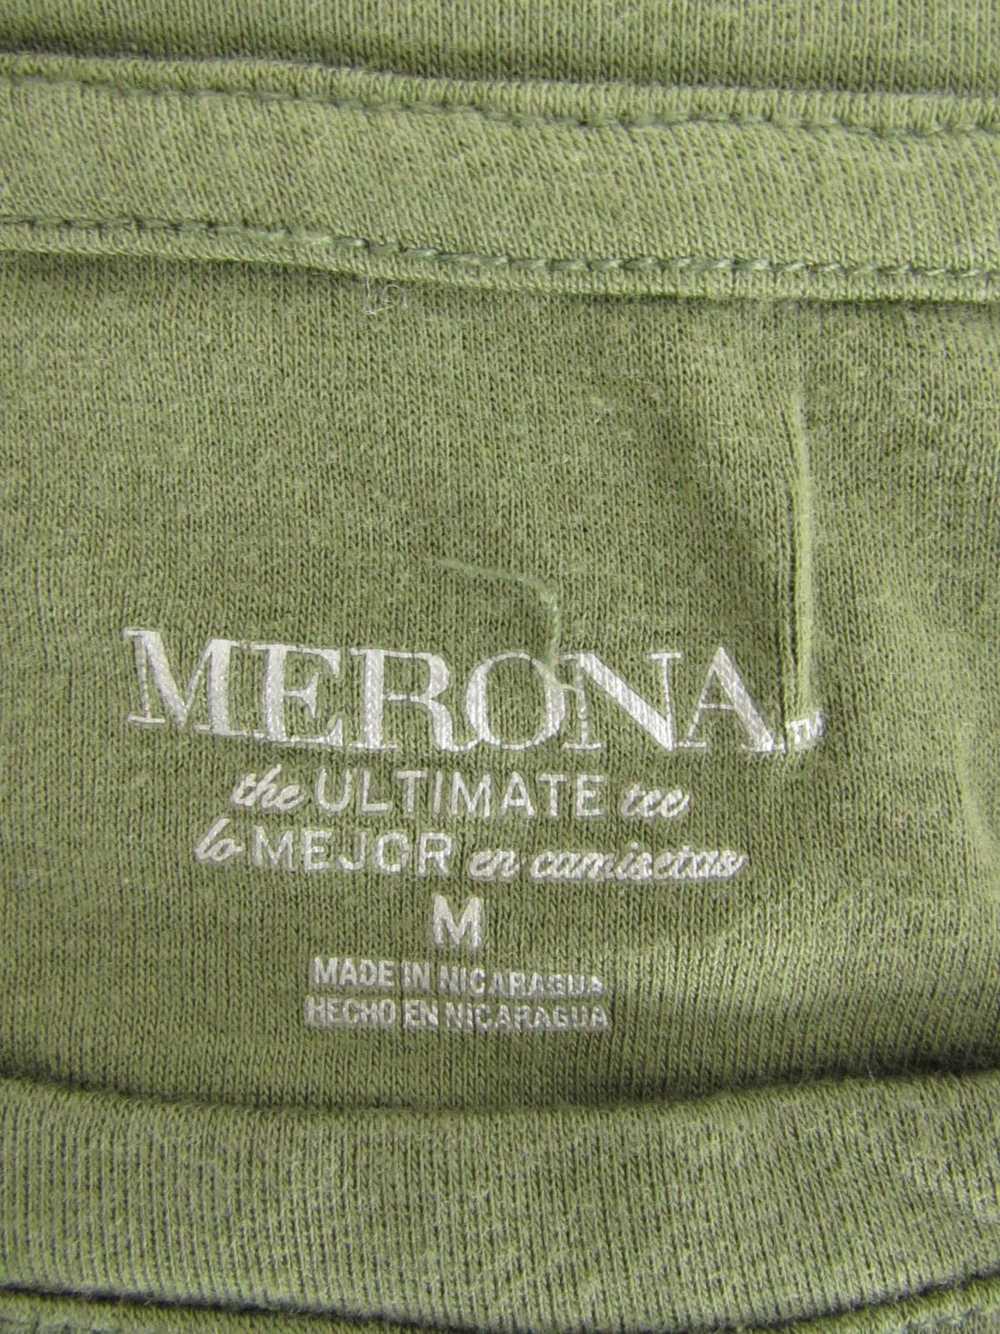 Merona T-Shirt Top - image 3